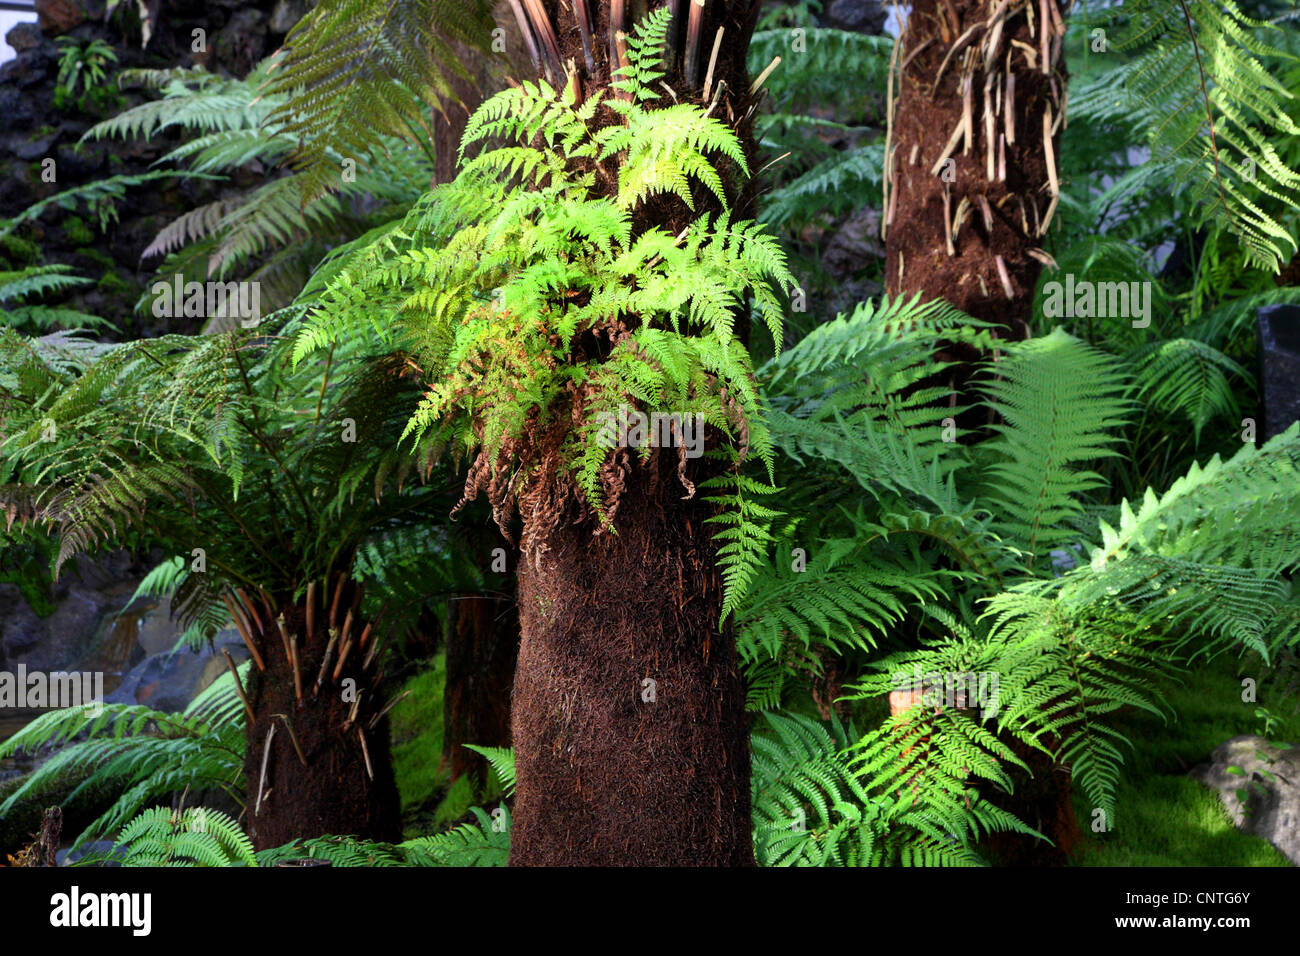 Fougère arborescente de Tasmanie, Soft fougère arborescente (Dicksonia antarctica), les fougères arborescentes, Nouvelle-Zélande Banque D'Images